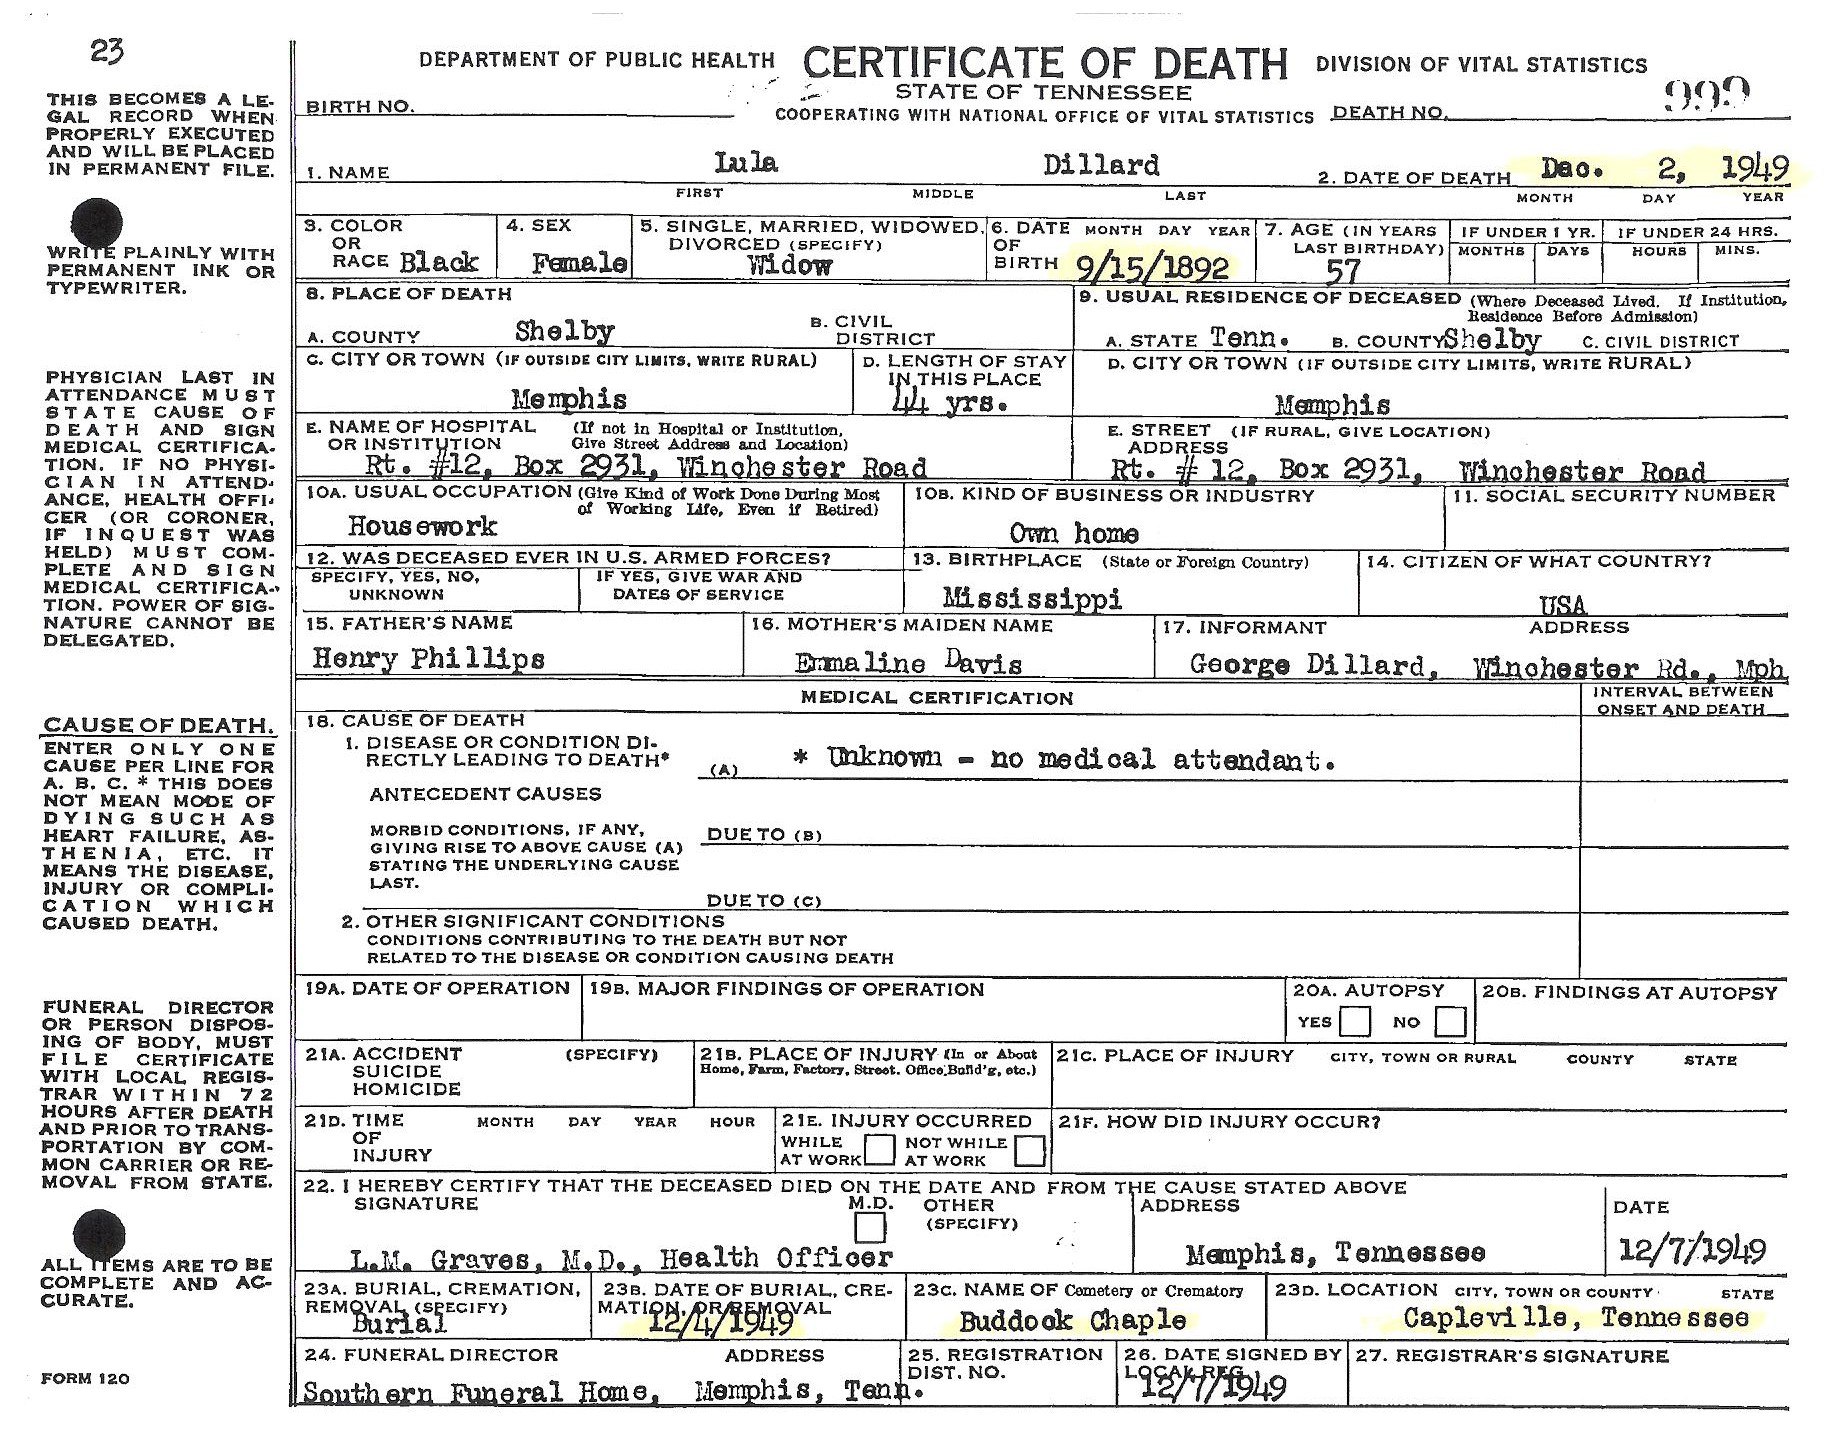 Lula Phillips-Dillard's Death Certificate